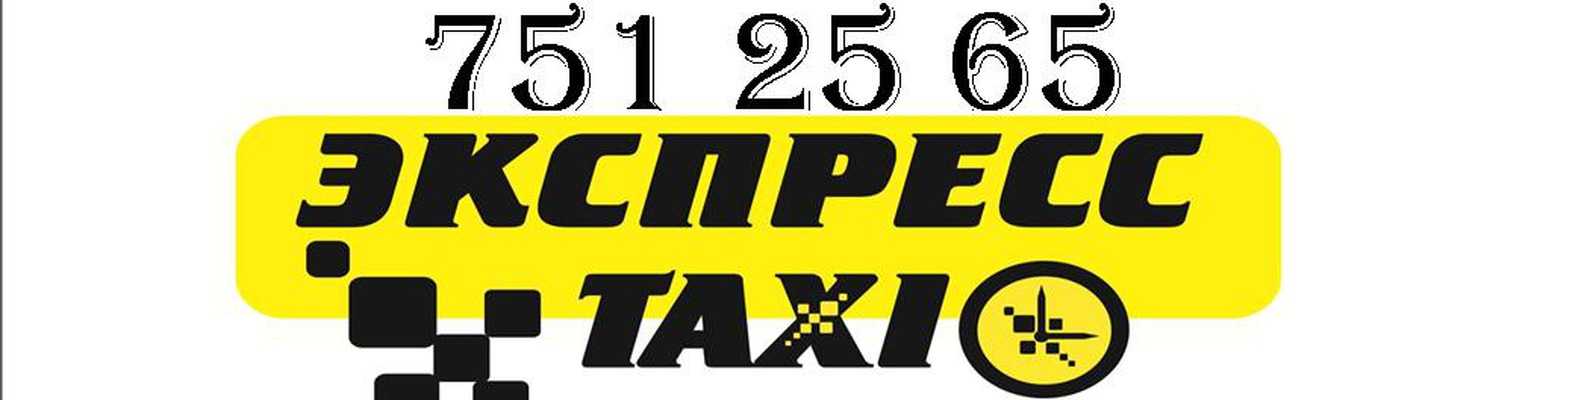 Такси экспресс номер телефона. Такси экспресс. Express Taxi лого. Такси Долгодеревенское. Такси экспресс номер.